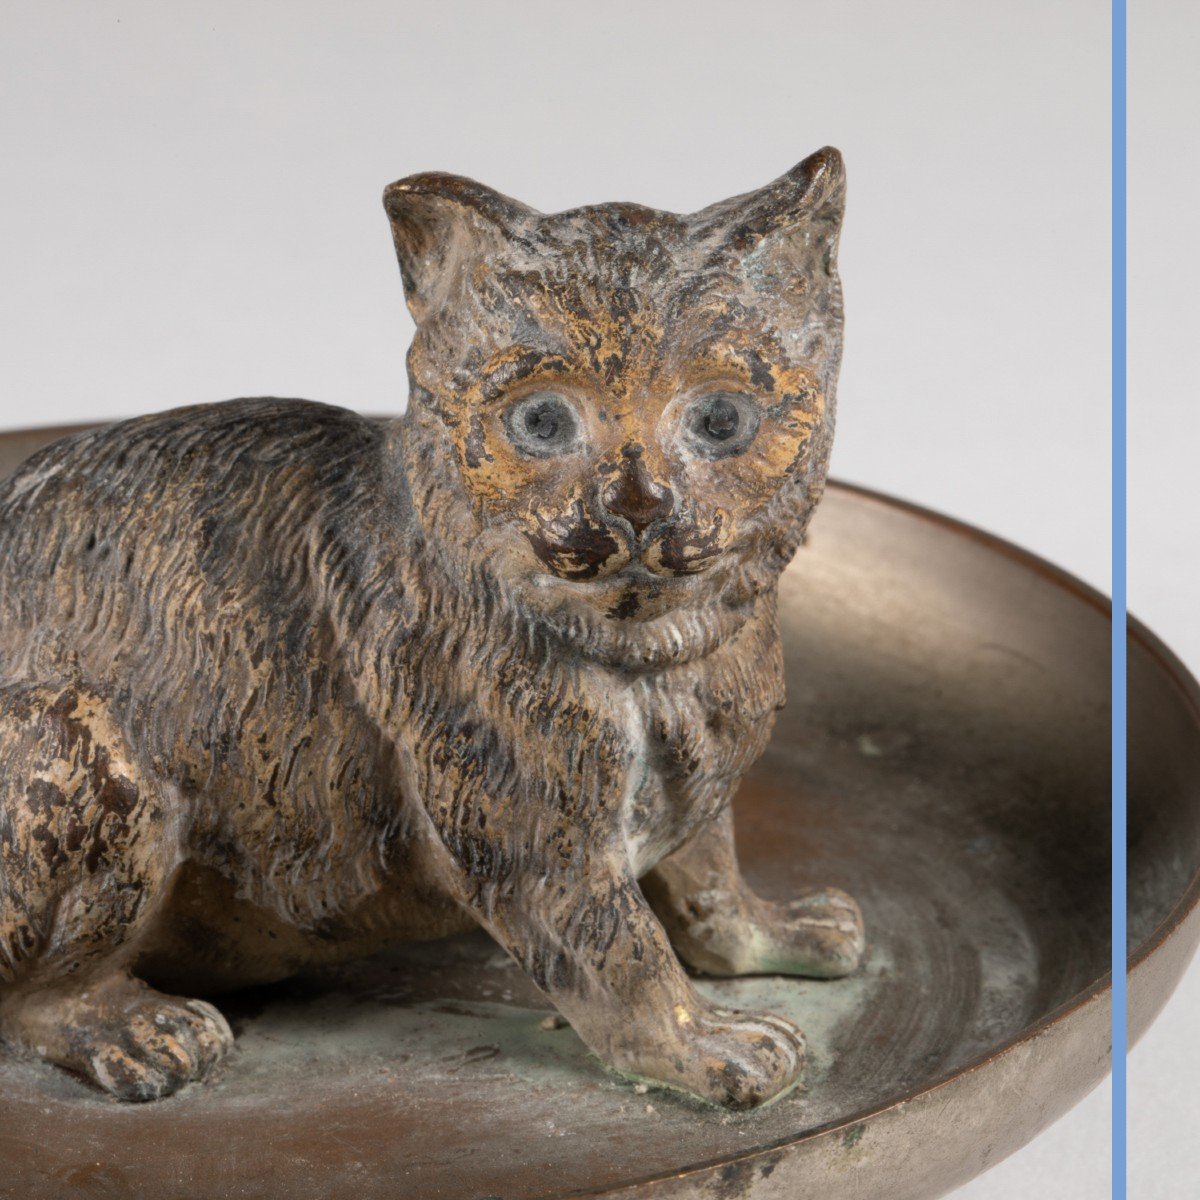 Chat dans une coupelle en bronze de Vienne, XIXe-photo-2